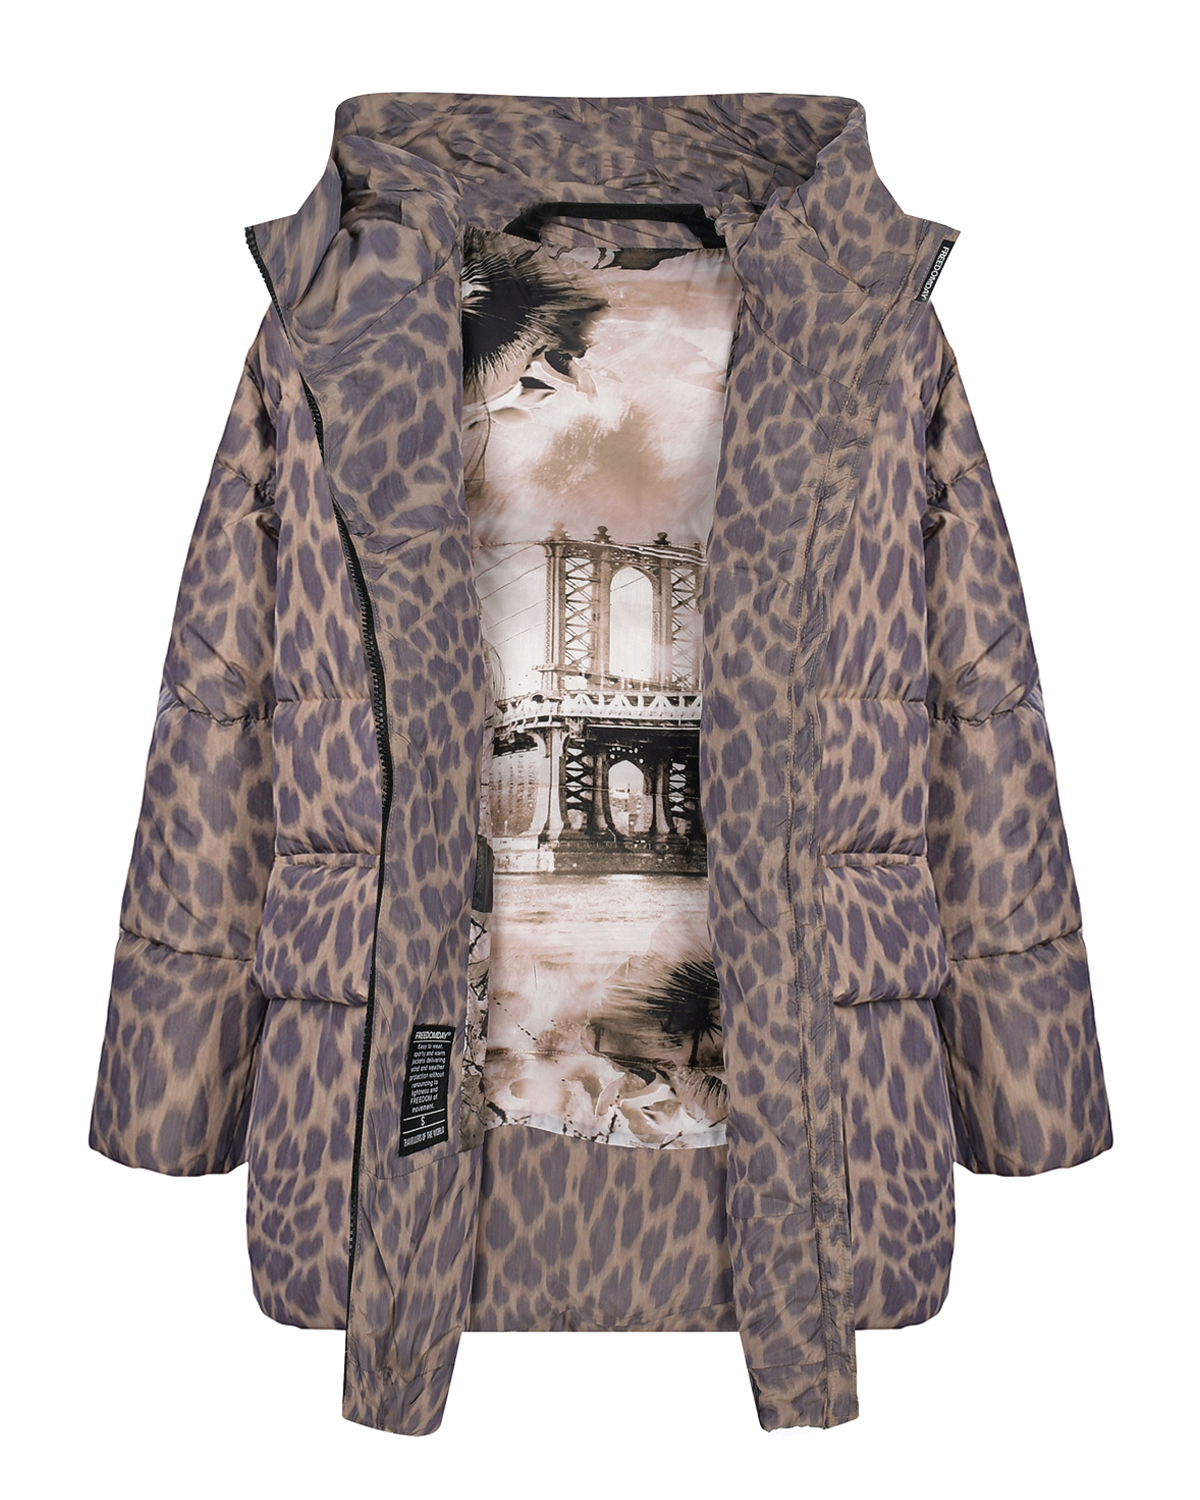 Пуховая куртка с леопардовым принтом Freedomday, размер 38, цвет бежевый - фото 7